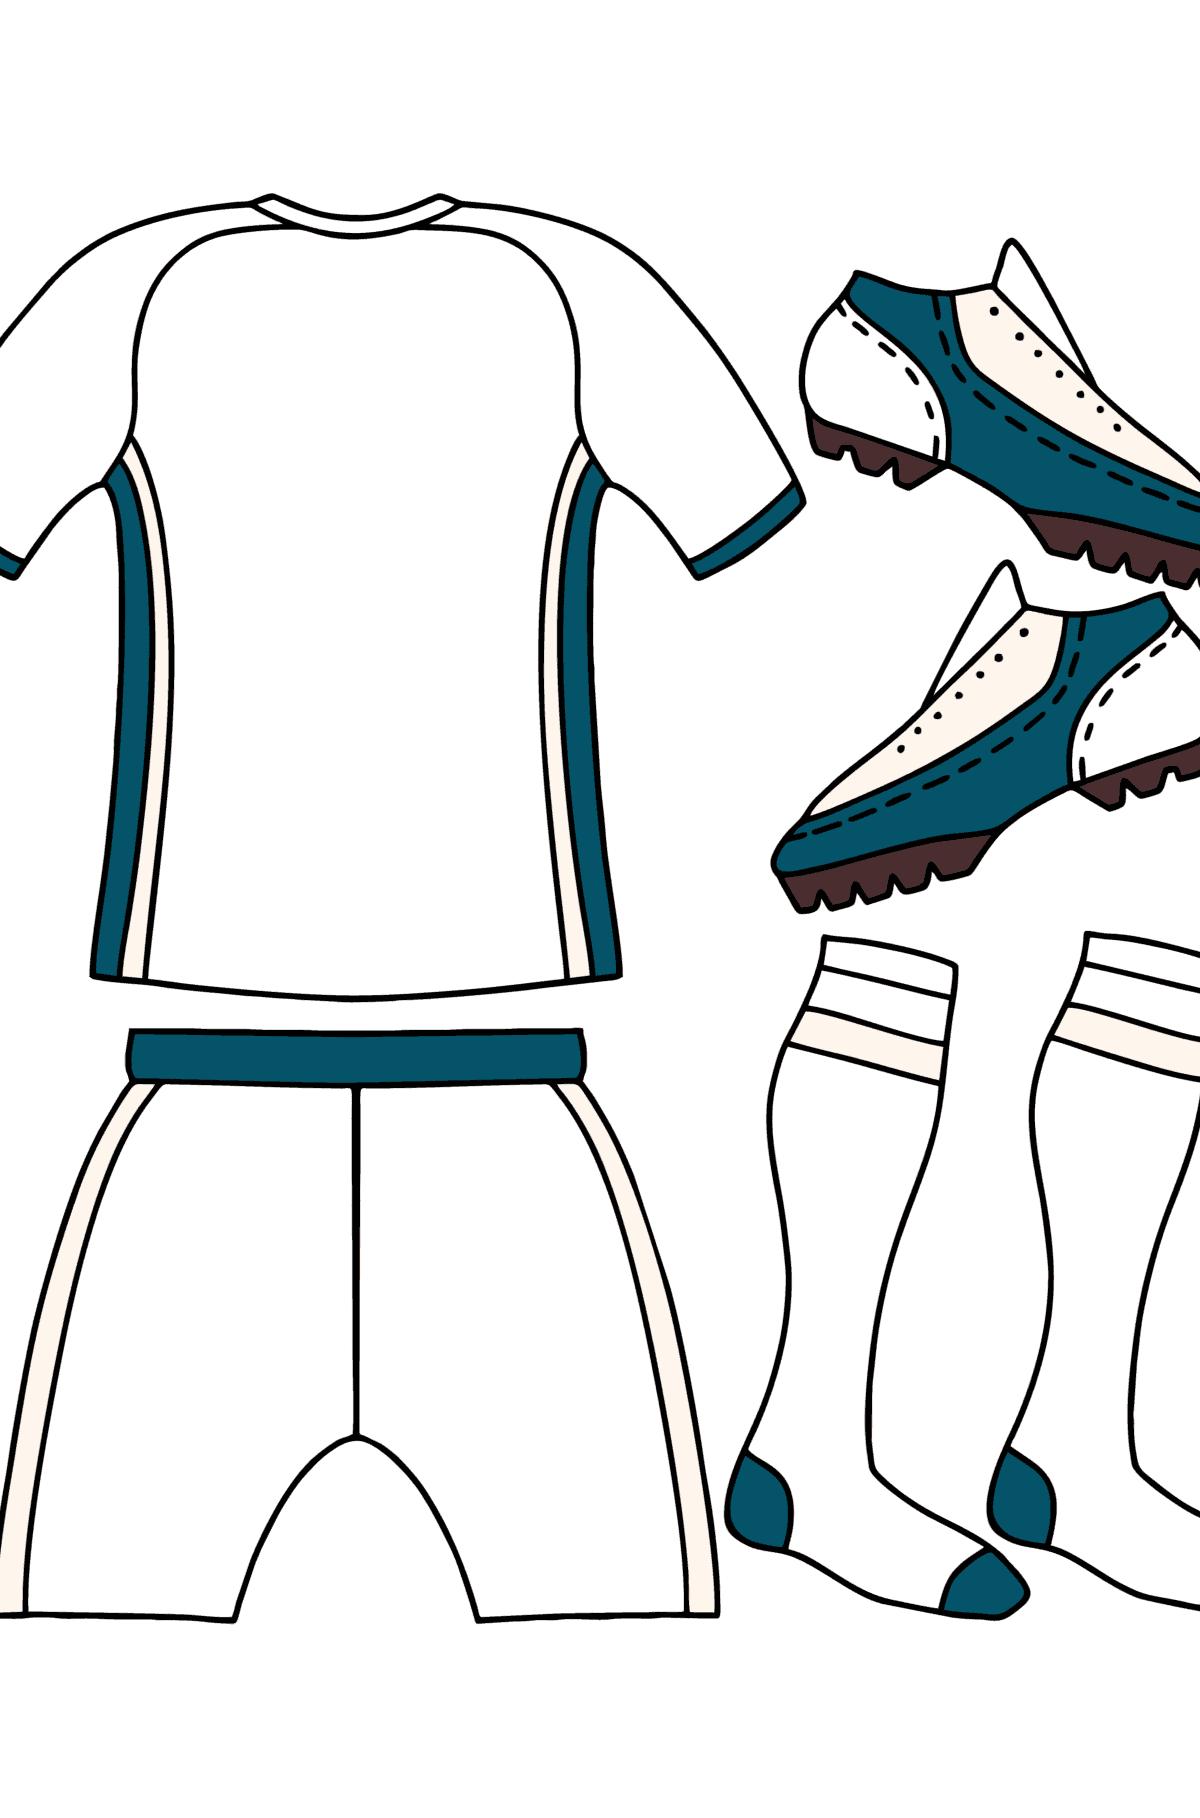 Disegno da colorare Kit giocatore di calcio UEFA - Disegni da colorare per bambini